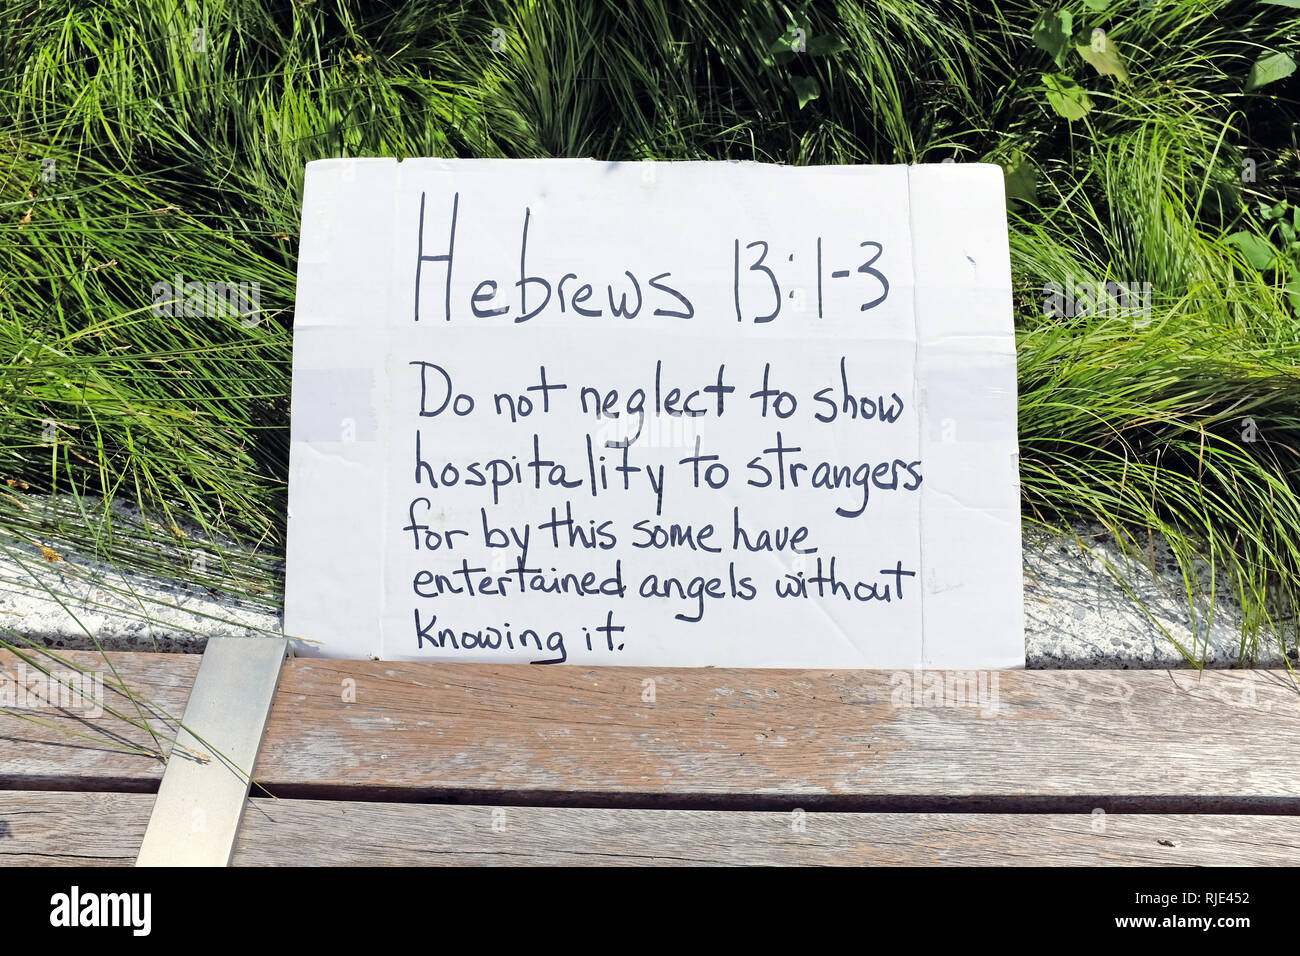 Ein Plakat, auf dem geschrieben steht Hebräer 13:1-3 über das Zeigen Gastfreundschaft gegenüber Fremden ist auf Anzeige an eine pro-immigrant Rallye in Cleveland, Ohio, USA. Stockfoto